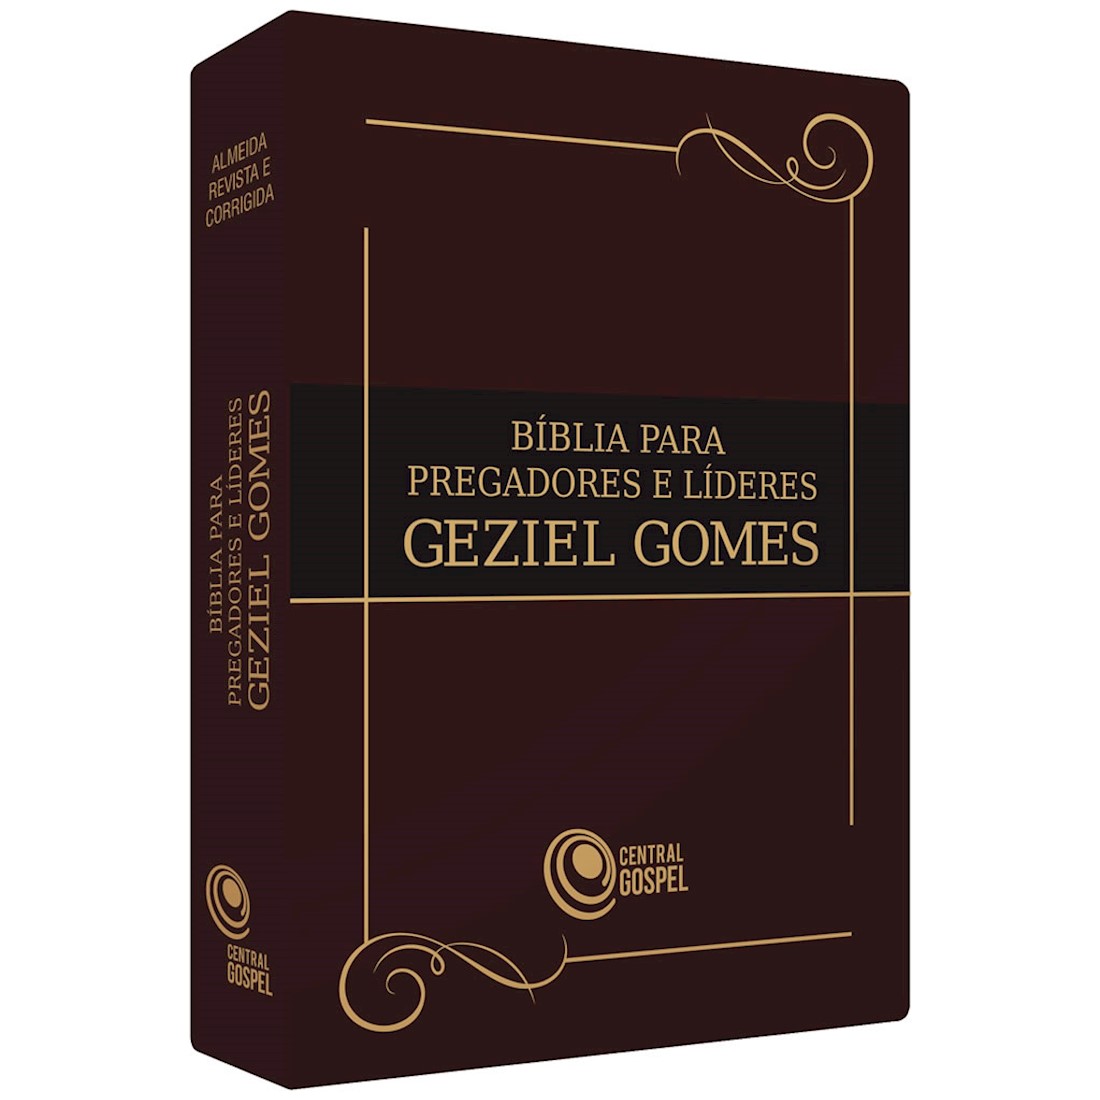 Bíblia Para Pregadores e Líderes - Geziel Gomes